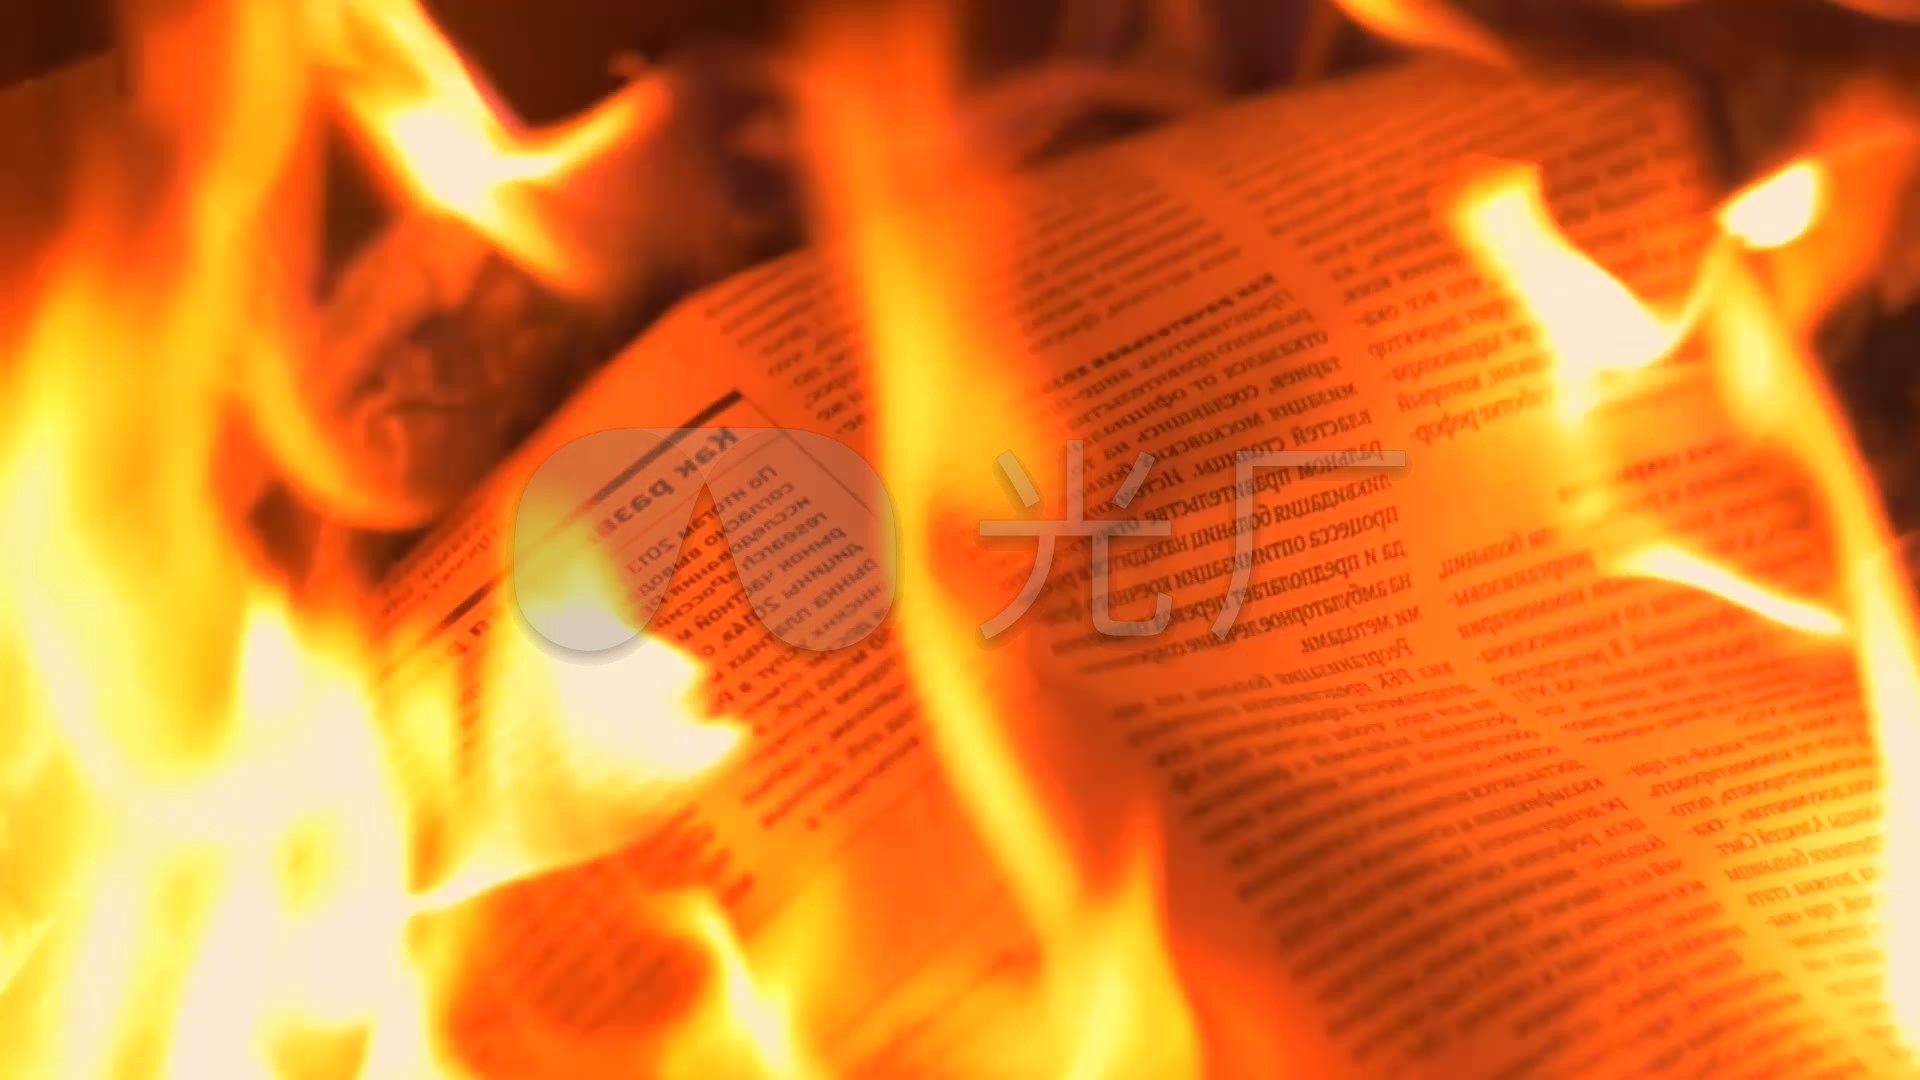 报纸书籍火焰燃烧被烧毁